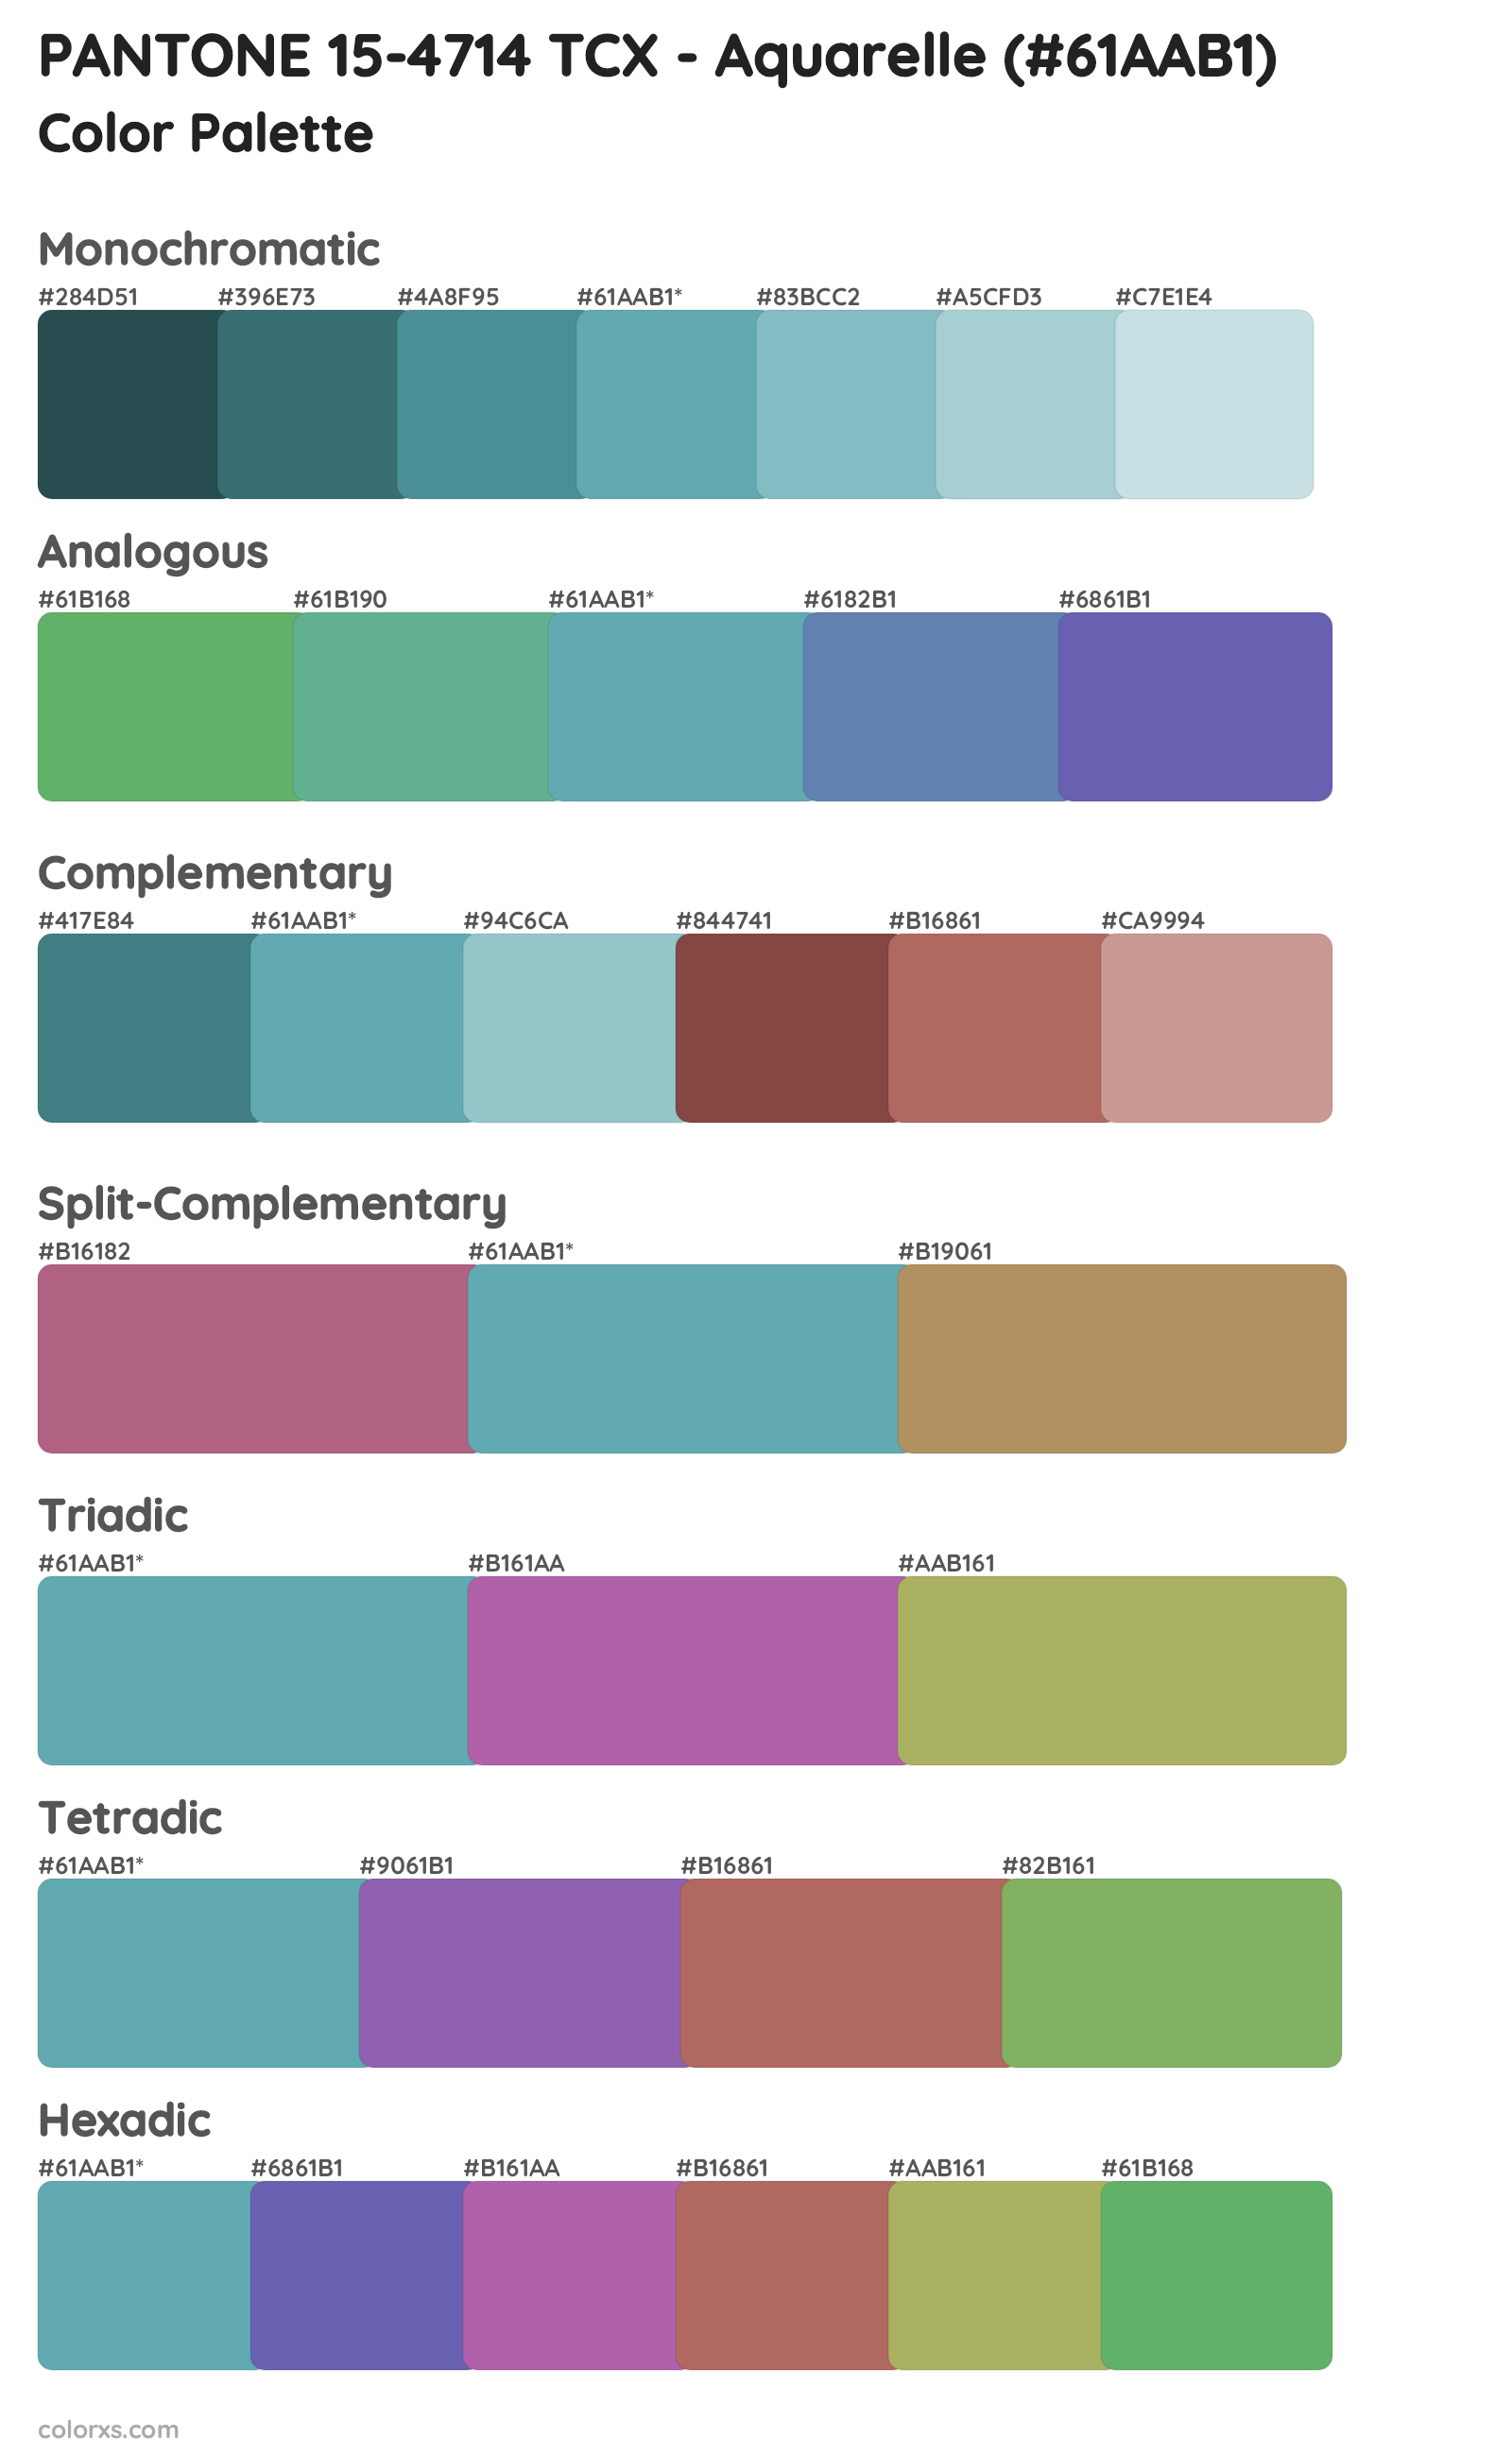 PANTONE 15-4714 TCX - Aquarelle Color Scheme Palettes